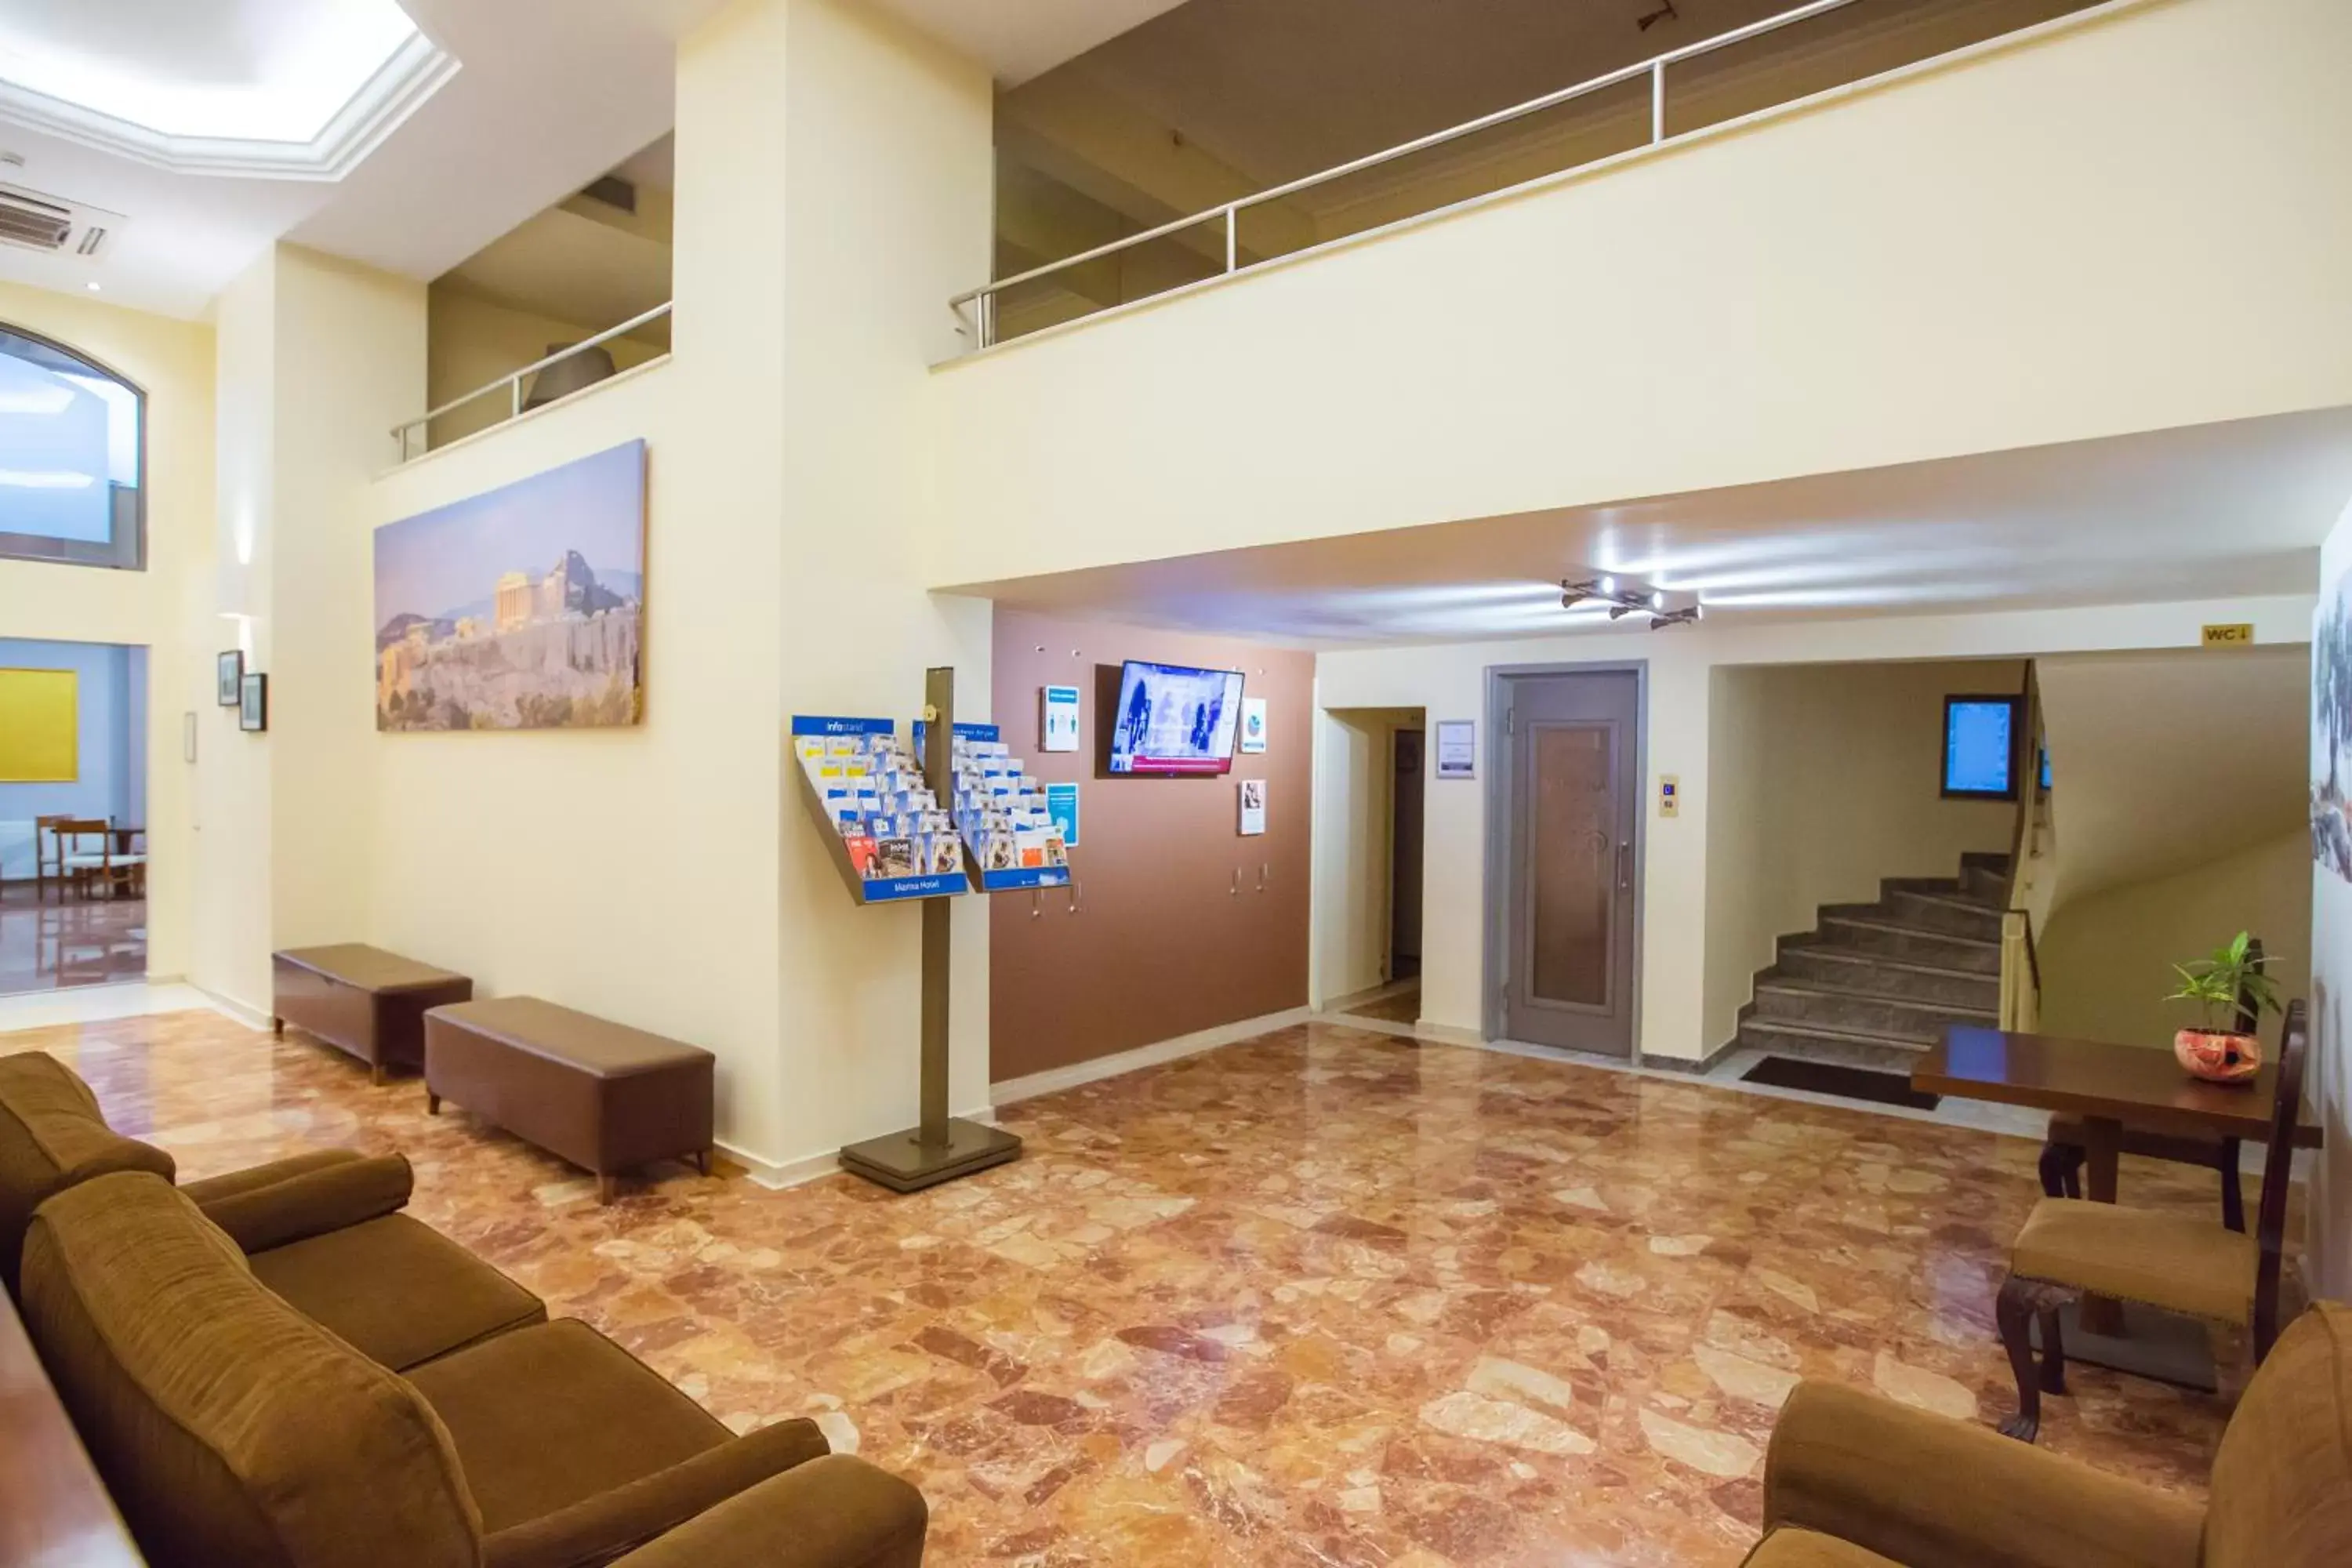 Lobby or reception, Lobby/Reception in Hotel Marina